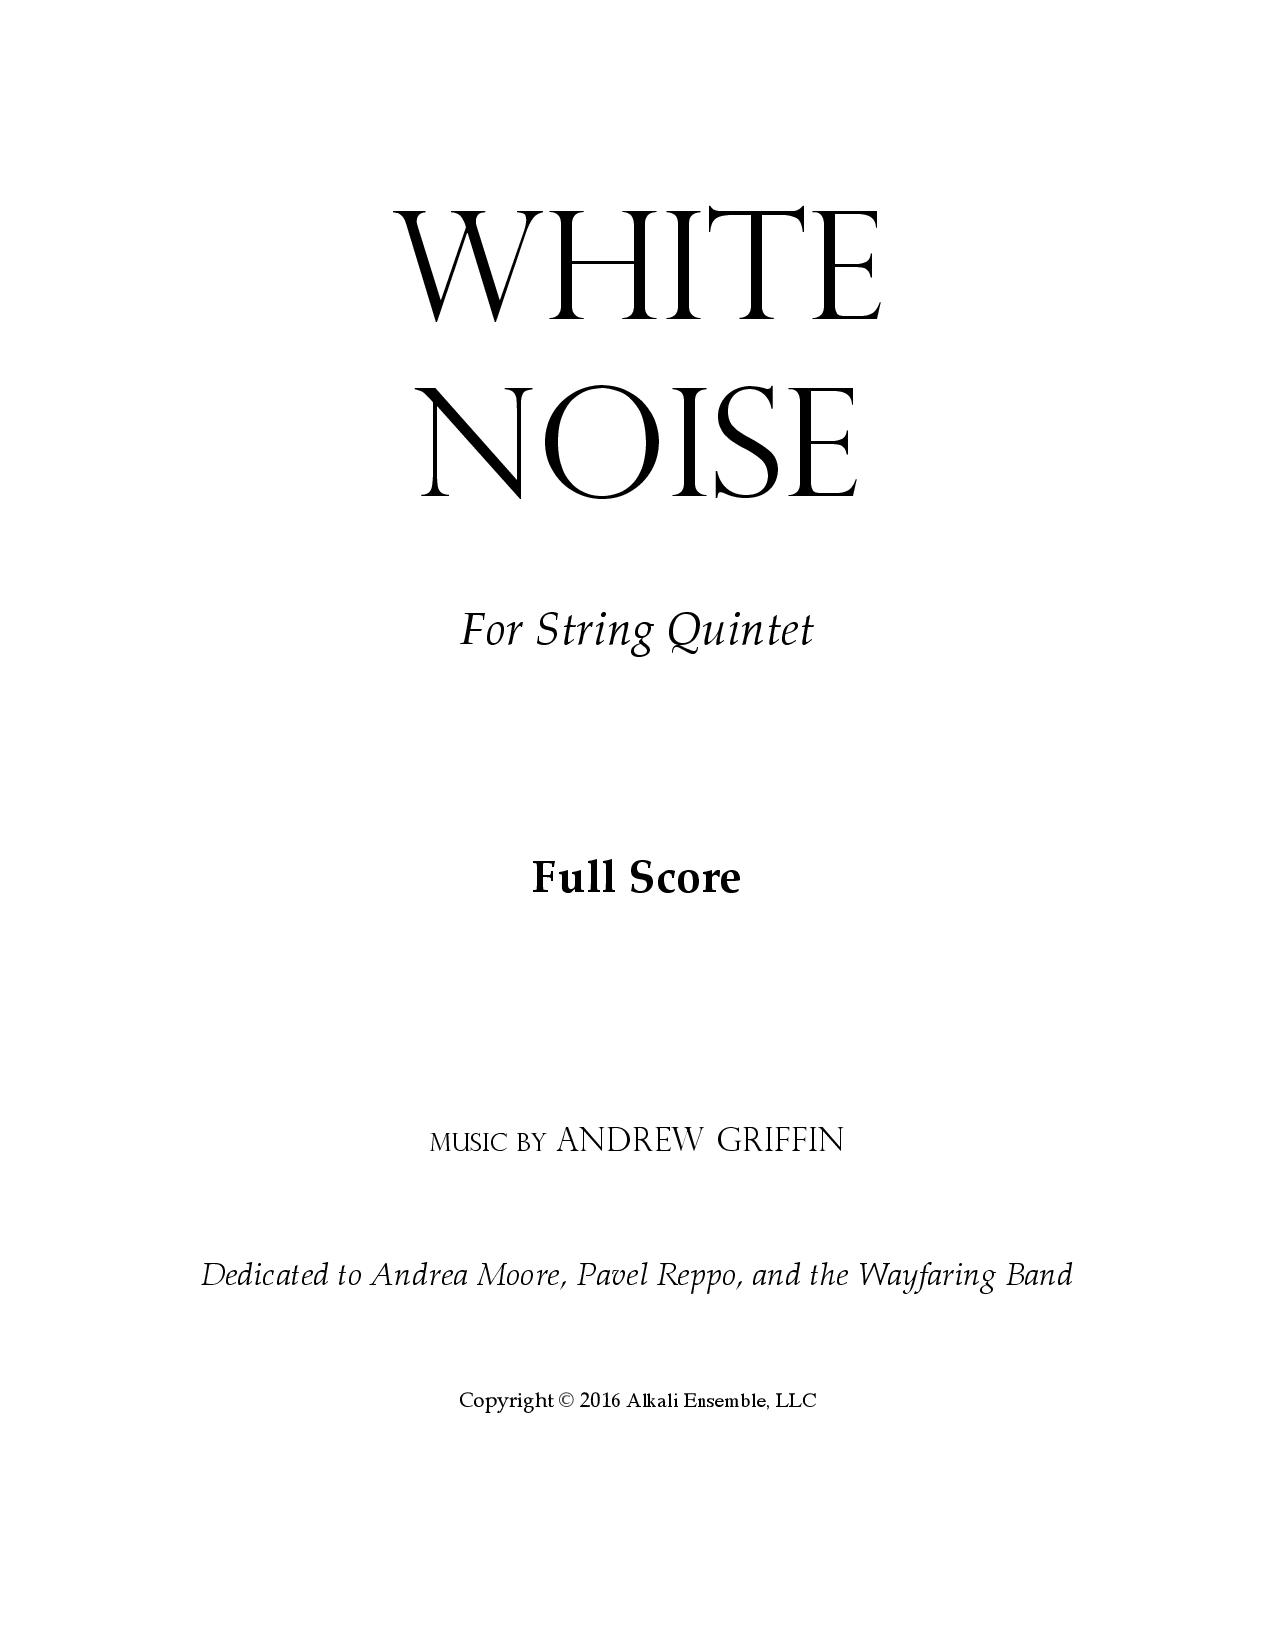 White Noise - Full Score-page-001.jpg